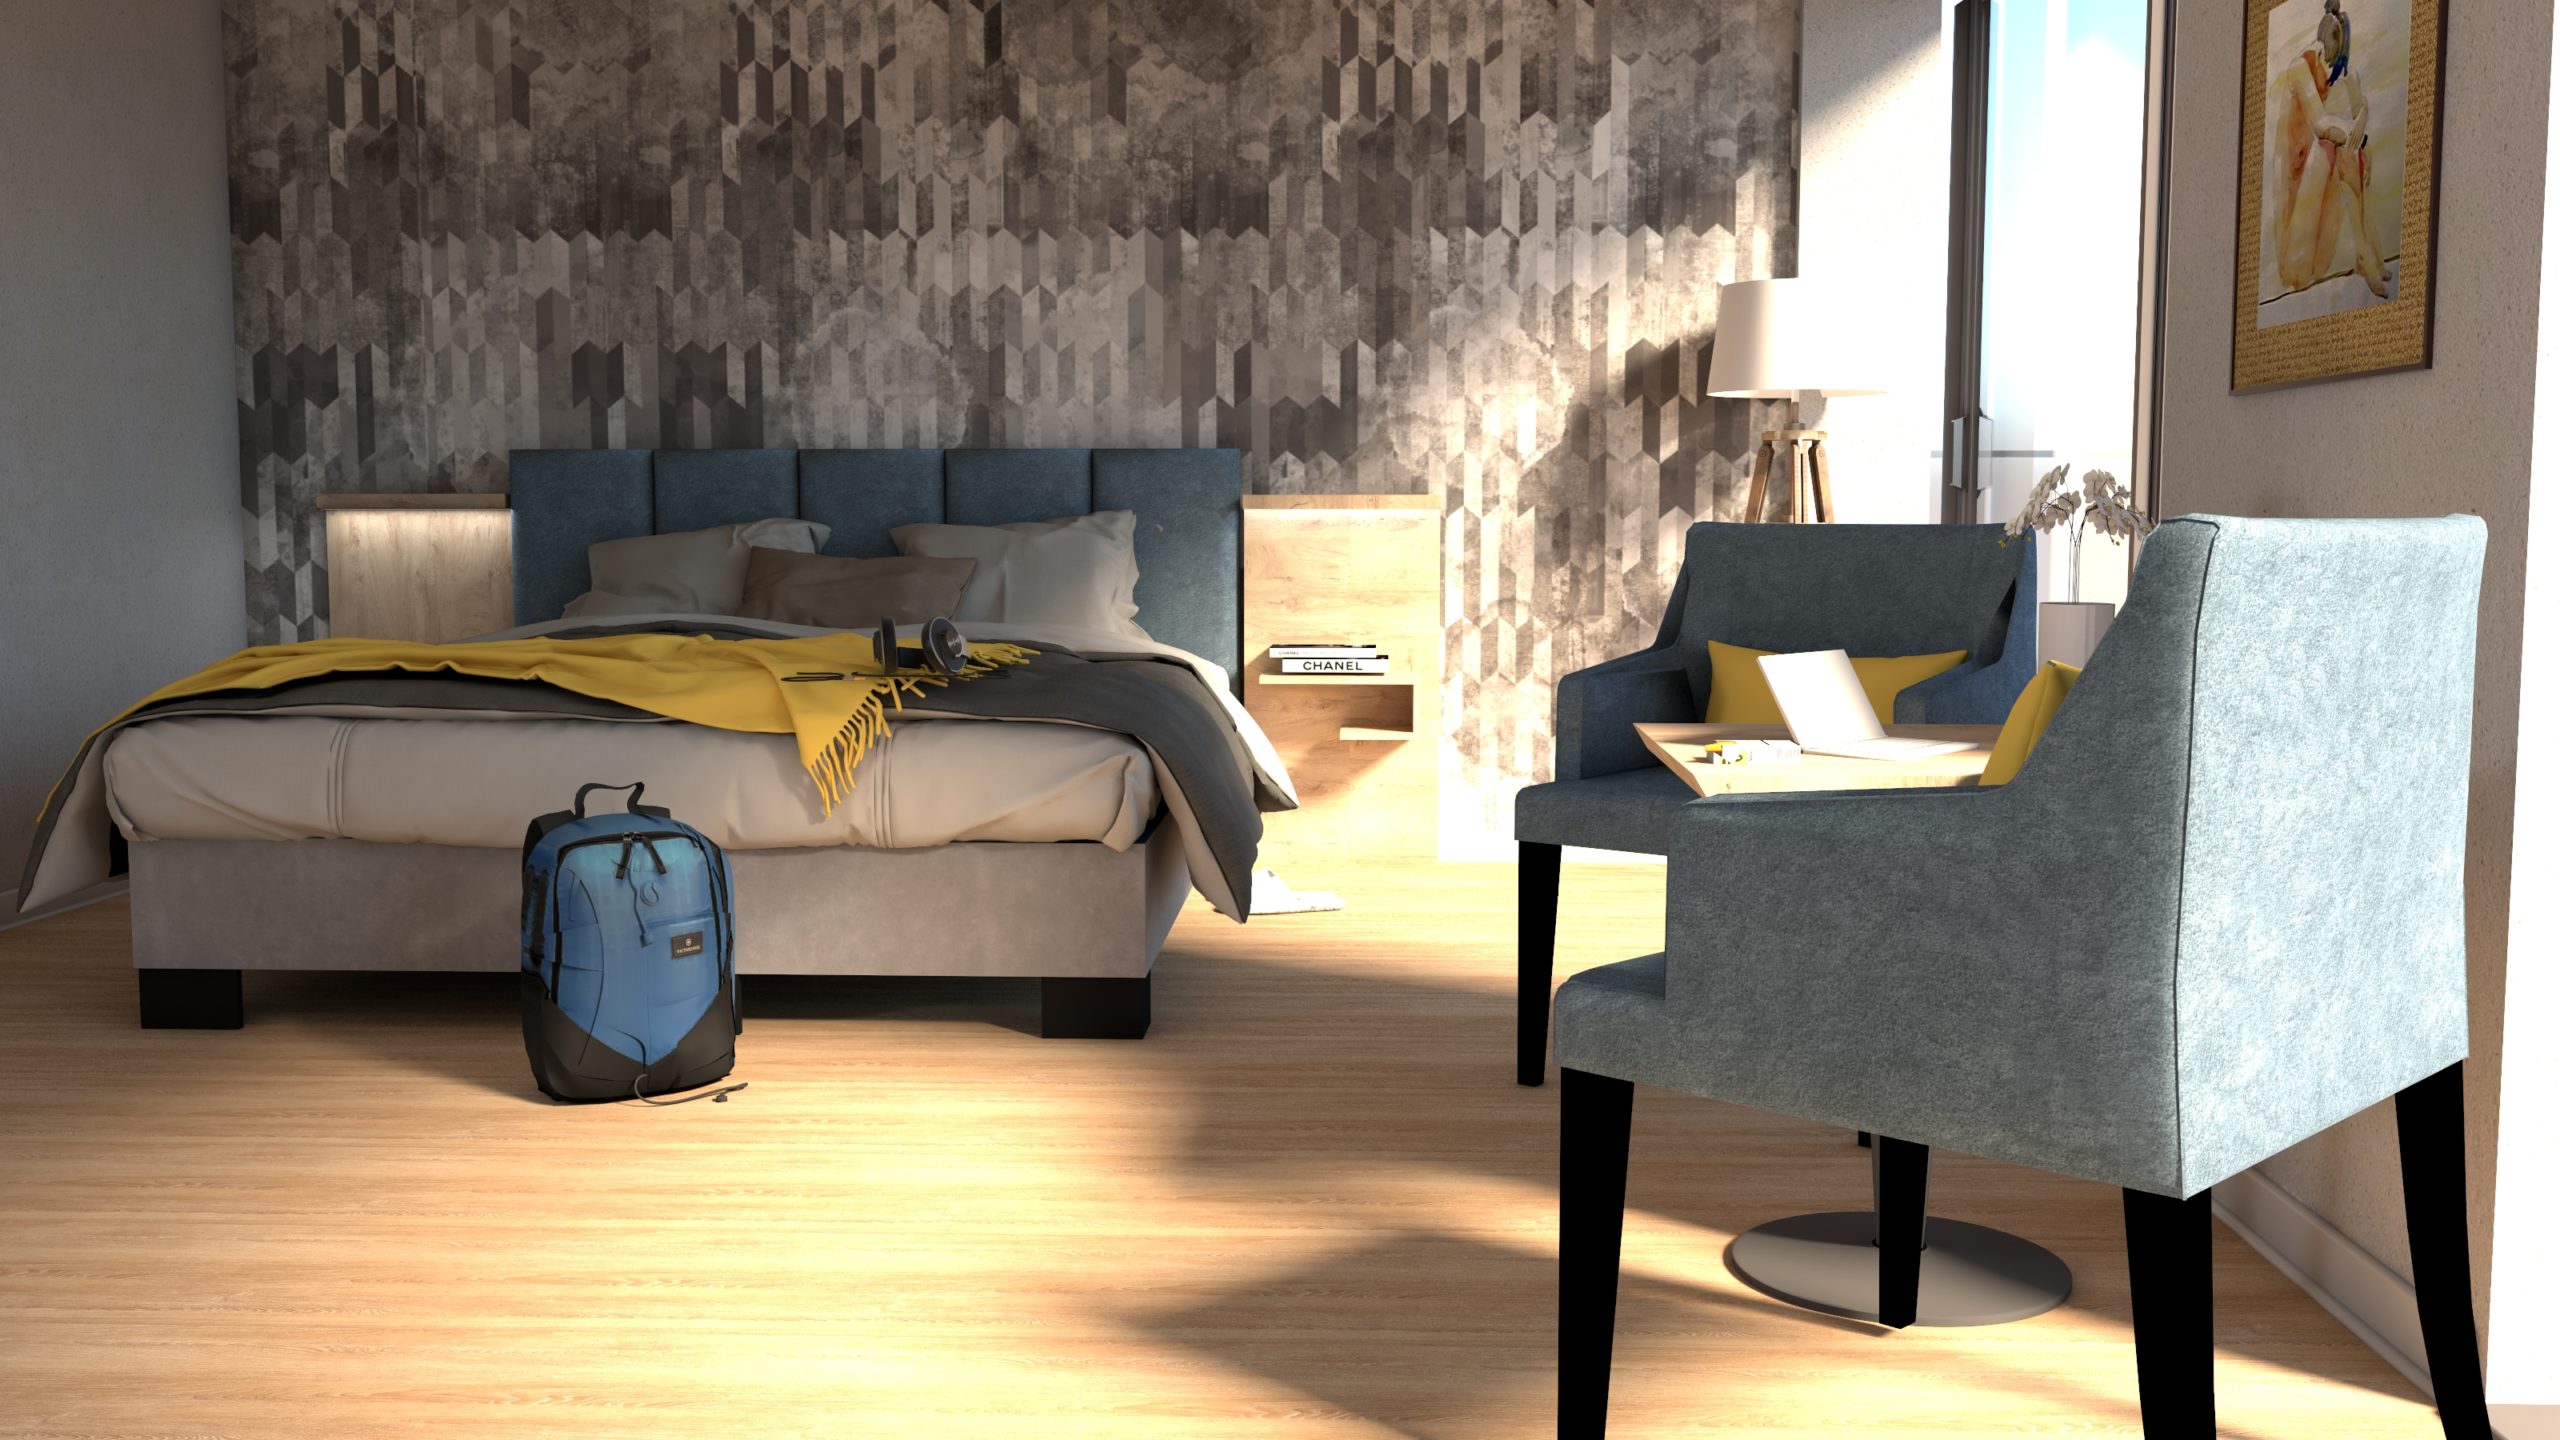 Einladendes Hotelzimmer mit einer Kompletteinrichtung für Hotels, inklusive eines bequemen Bettes mit blauer Kopflehne, stilvollen Sesseln und harmonischer Beleuchtung, entworfen, um eine gemütliche Atmosphäre zu schaffen.